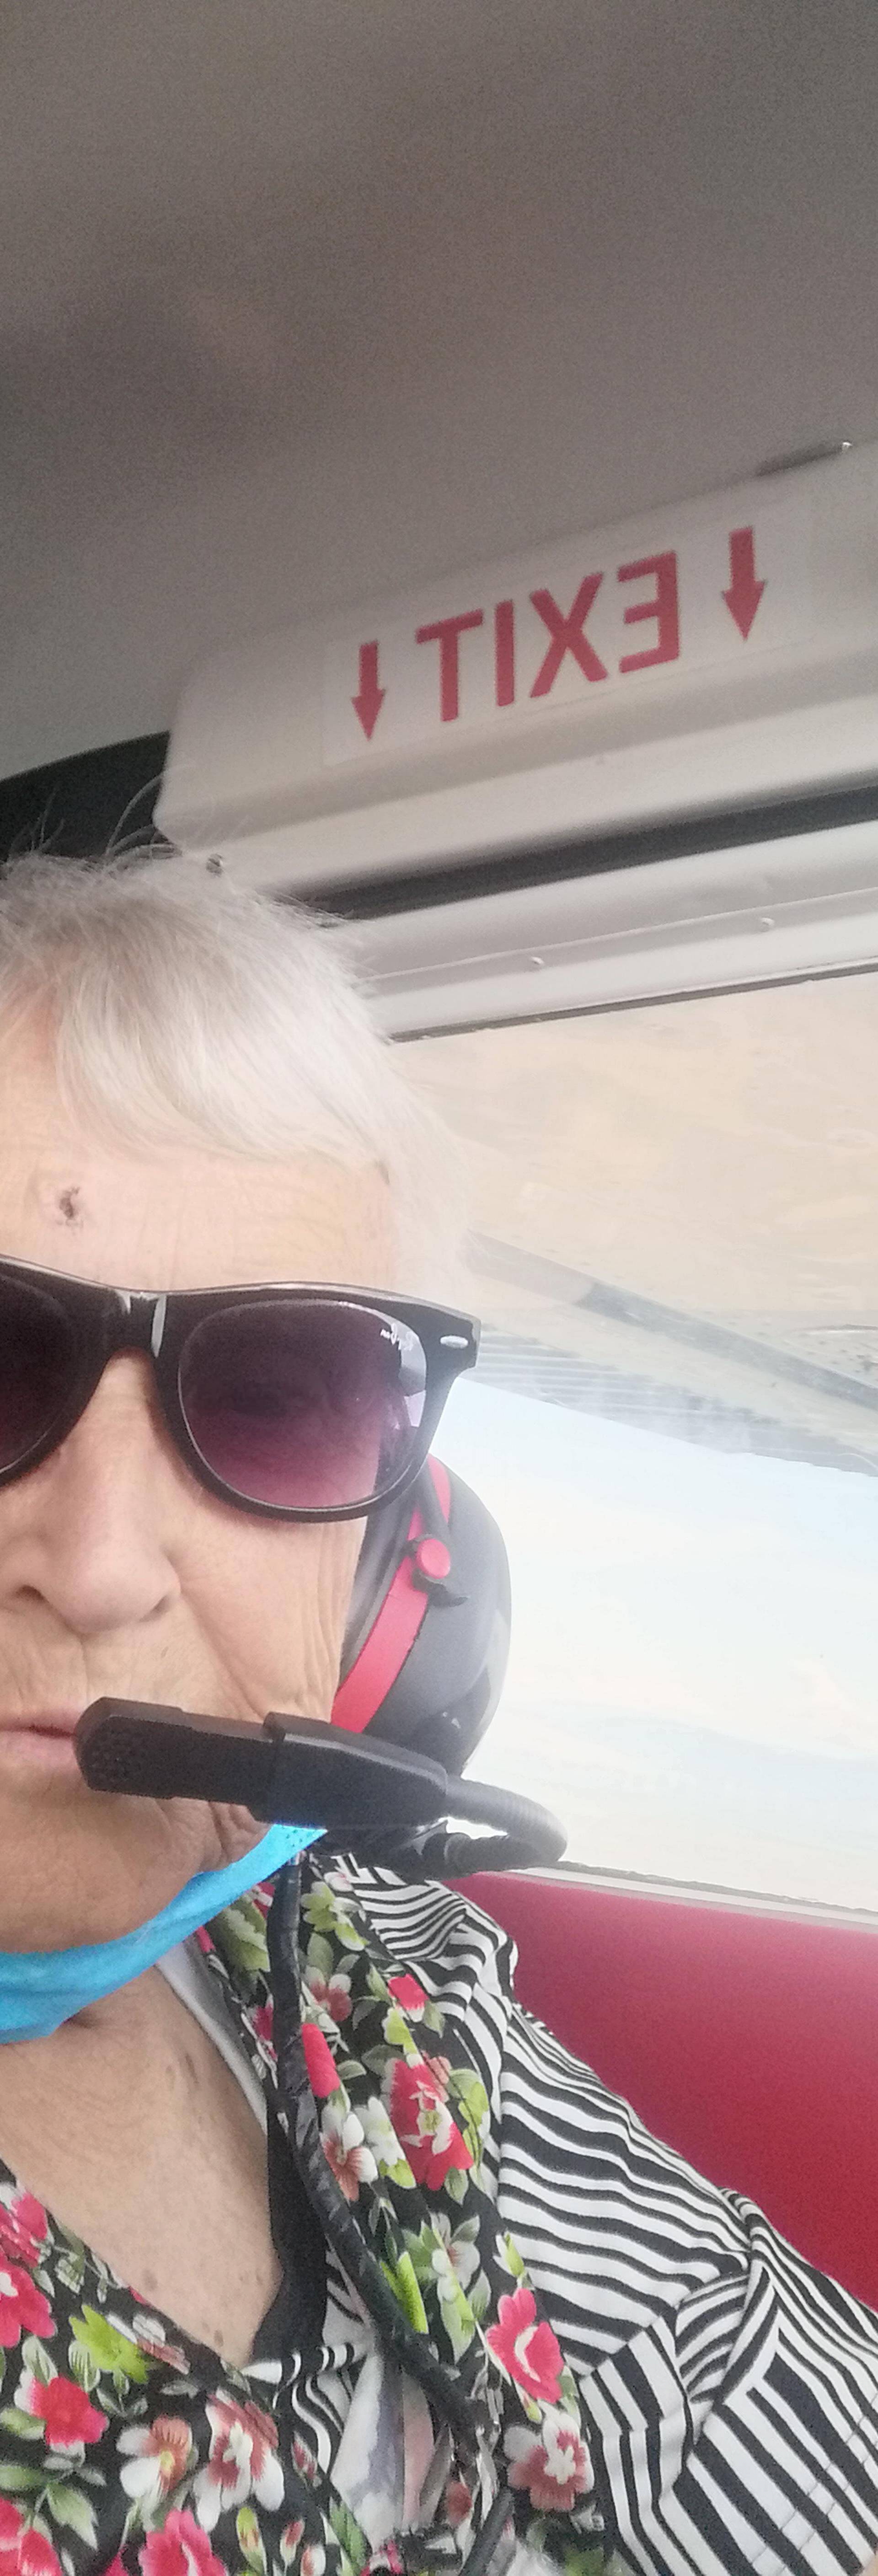 Leteća baka: 'Bilo mi je prvi put'